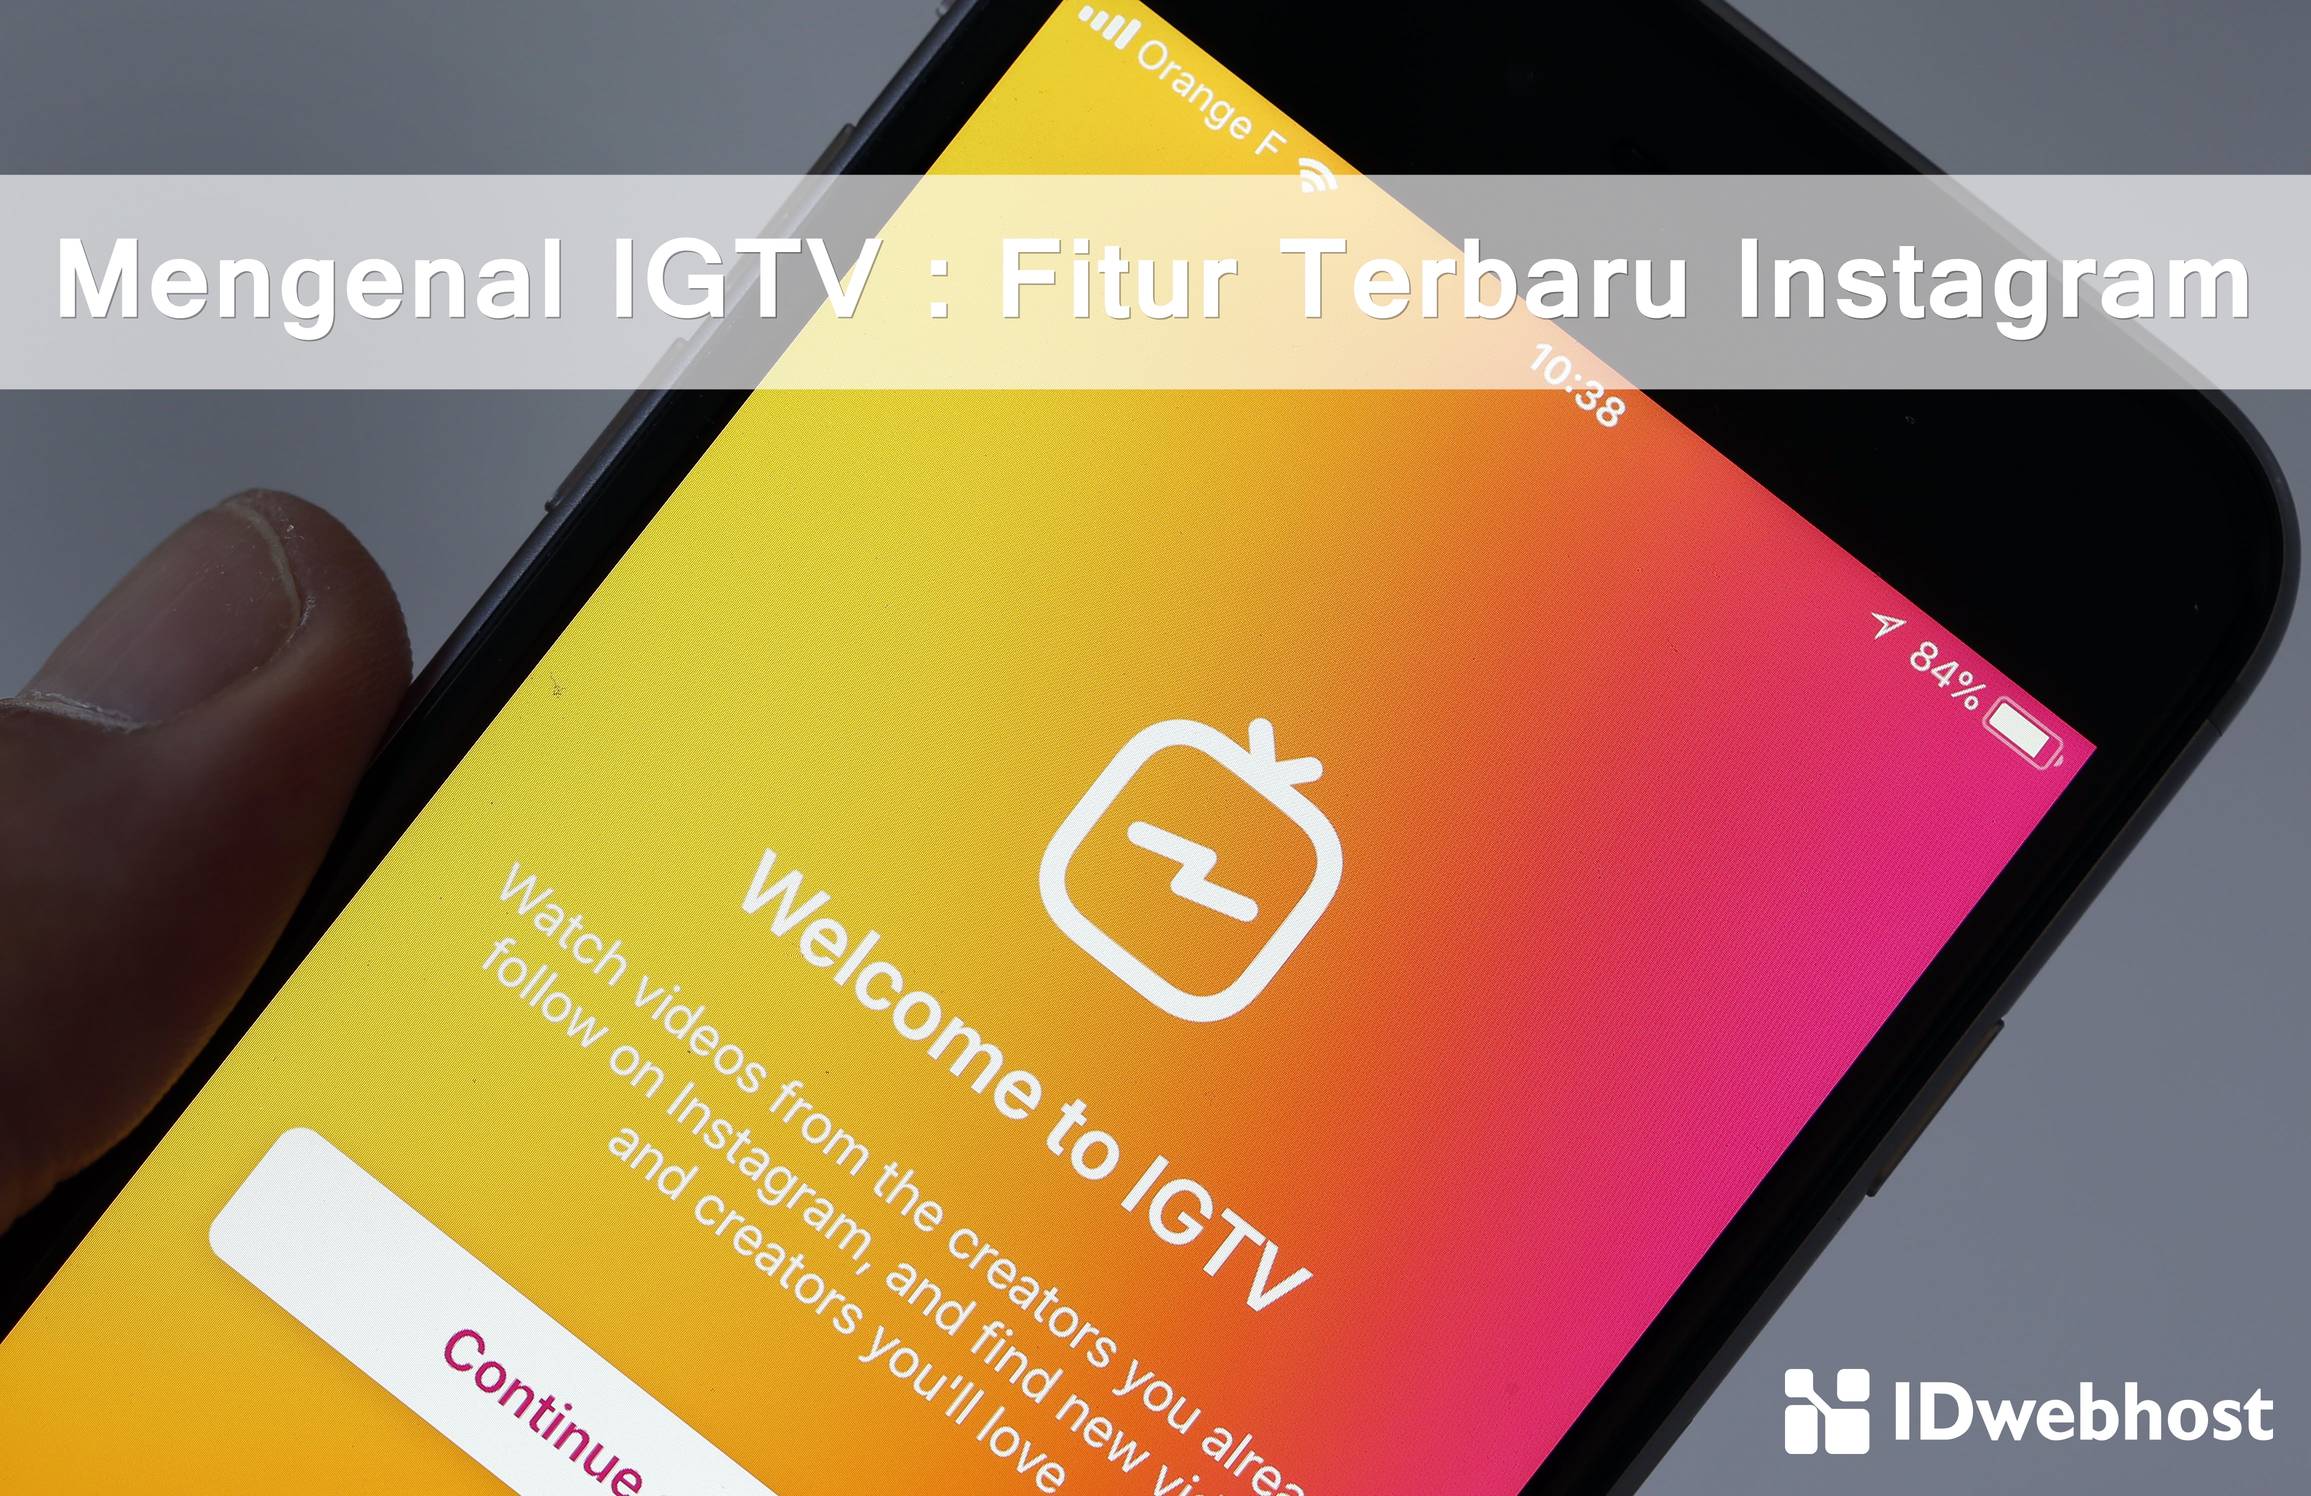 Mengenal IGTV : Fitur Terbaru Instagram